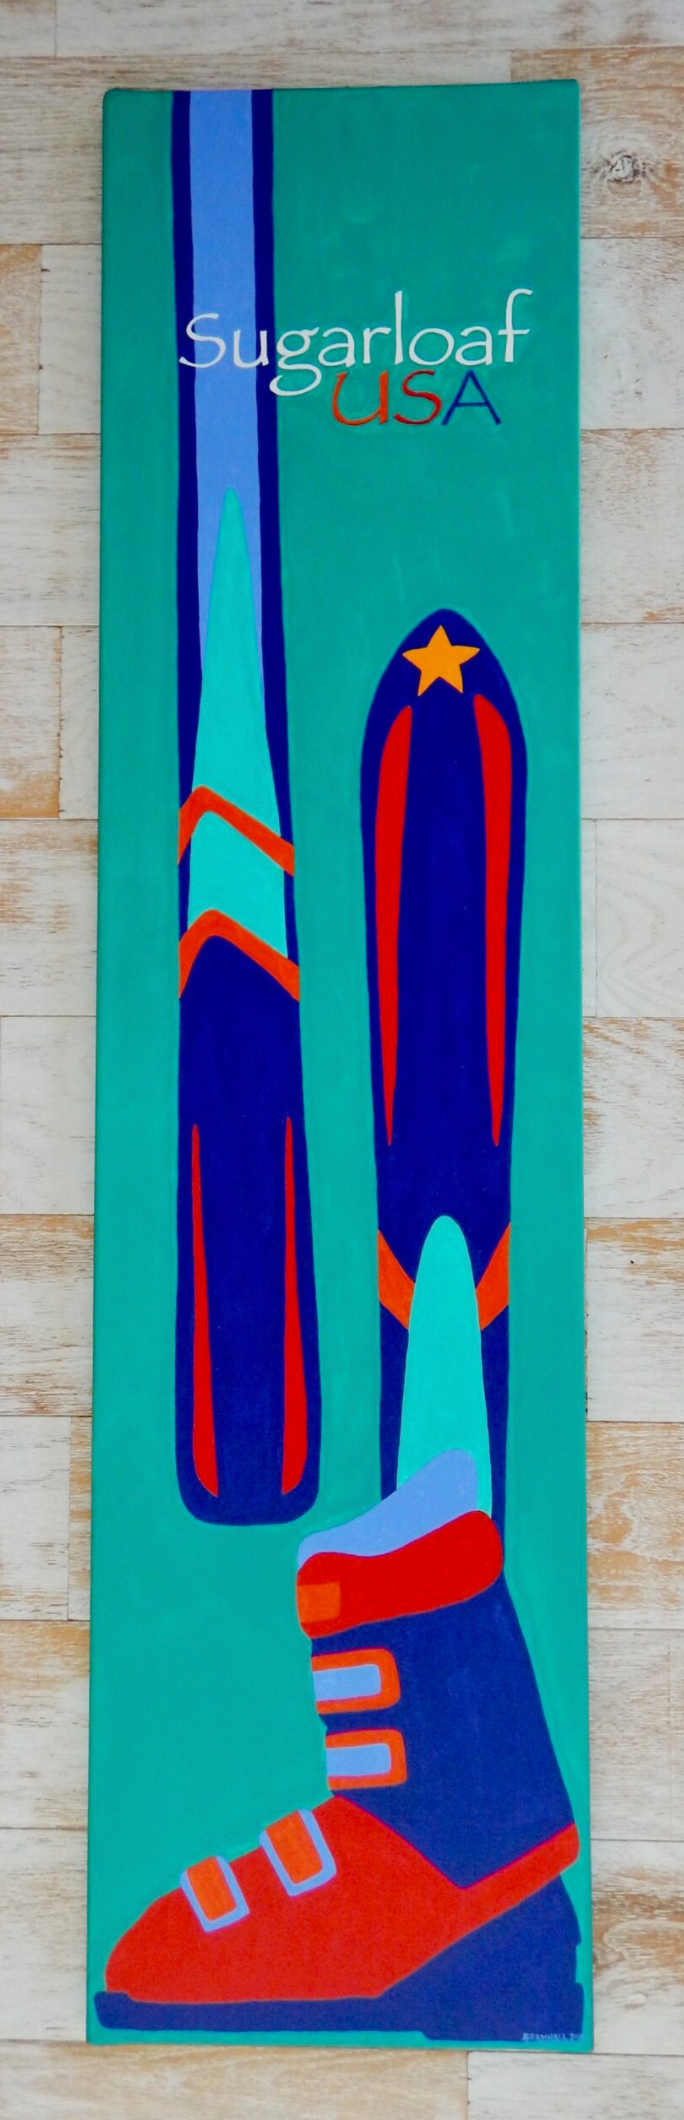 Sugarloaf Skis and Boot 12x48 Original Art